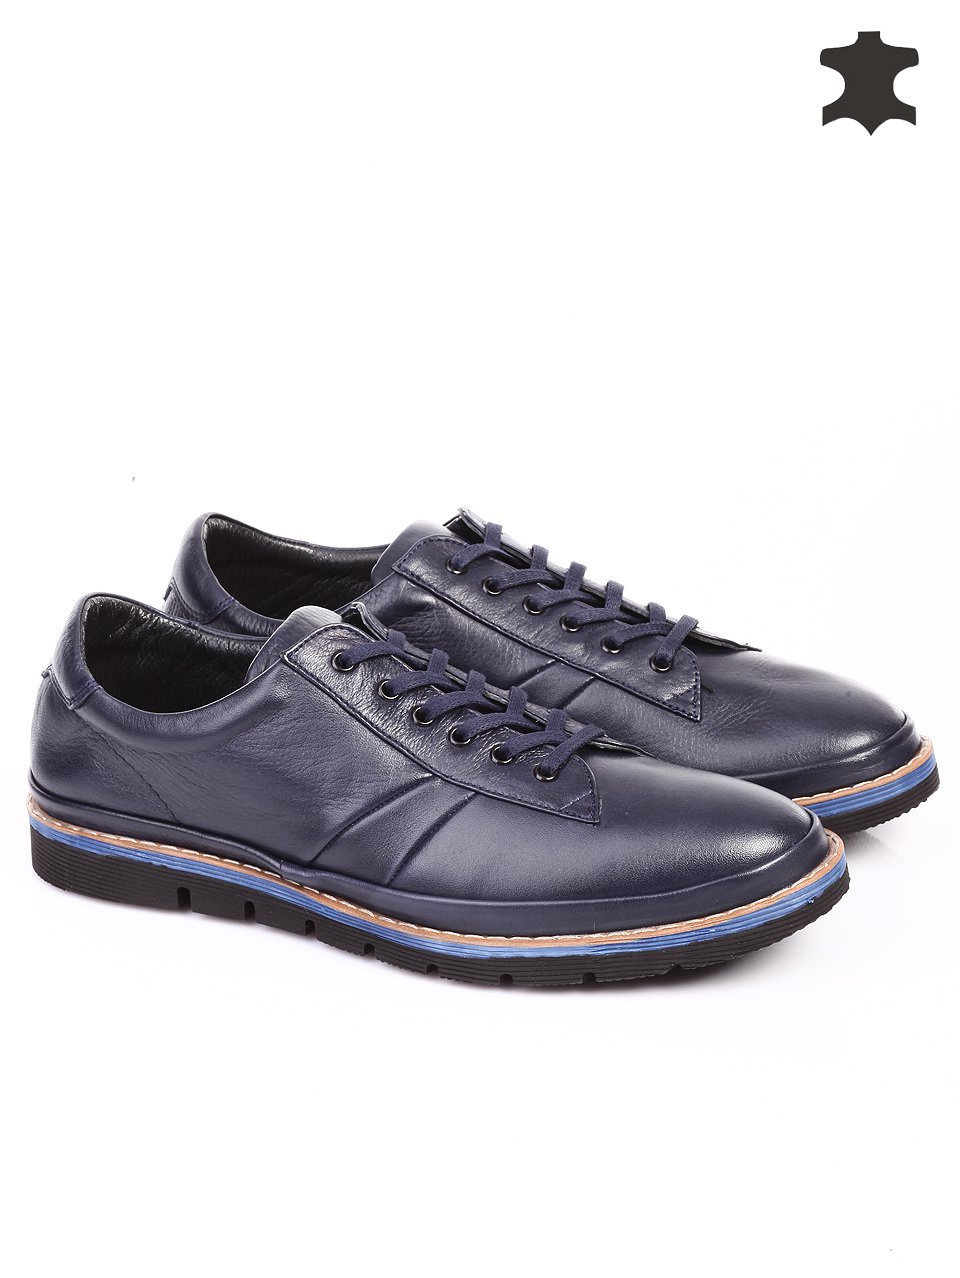 Ежедневни мъжки обувки от естествена кожа в синьо 7AT-15814 navy